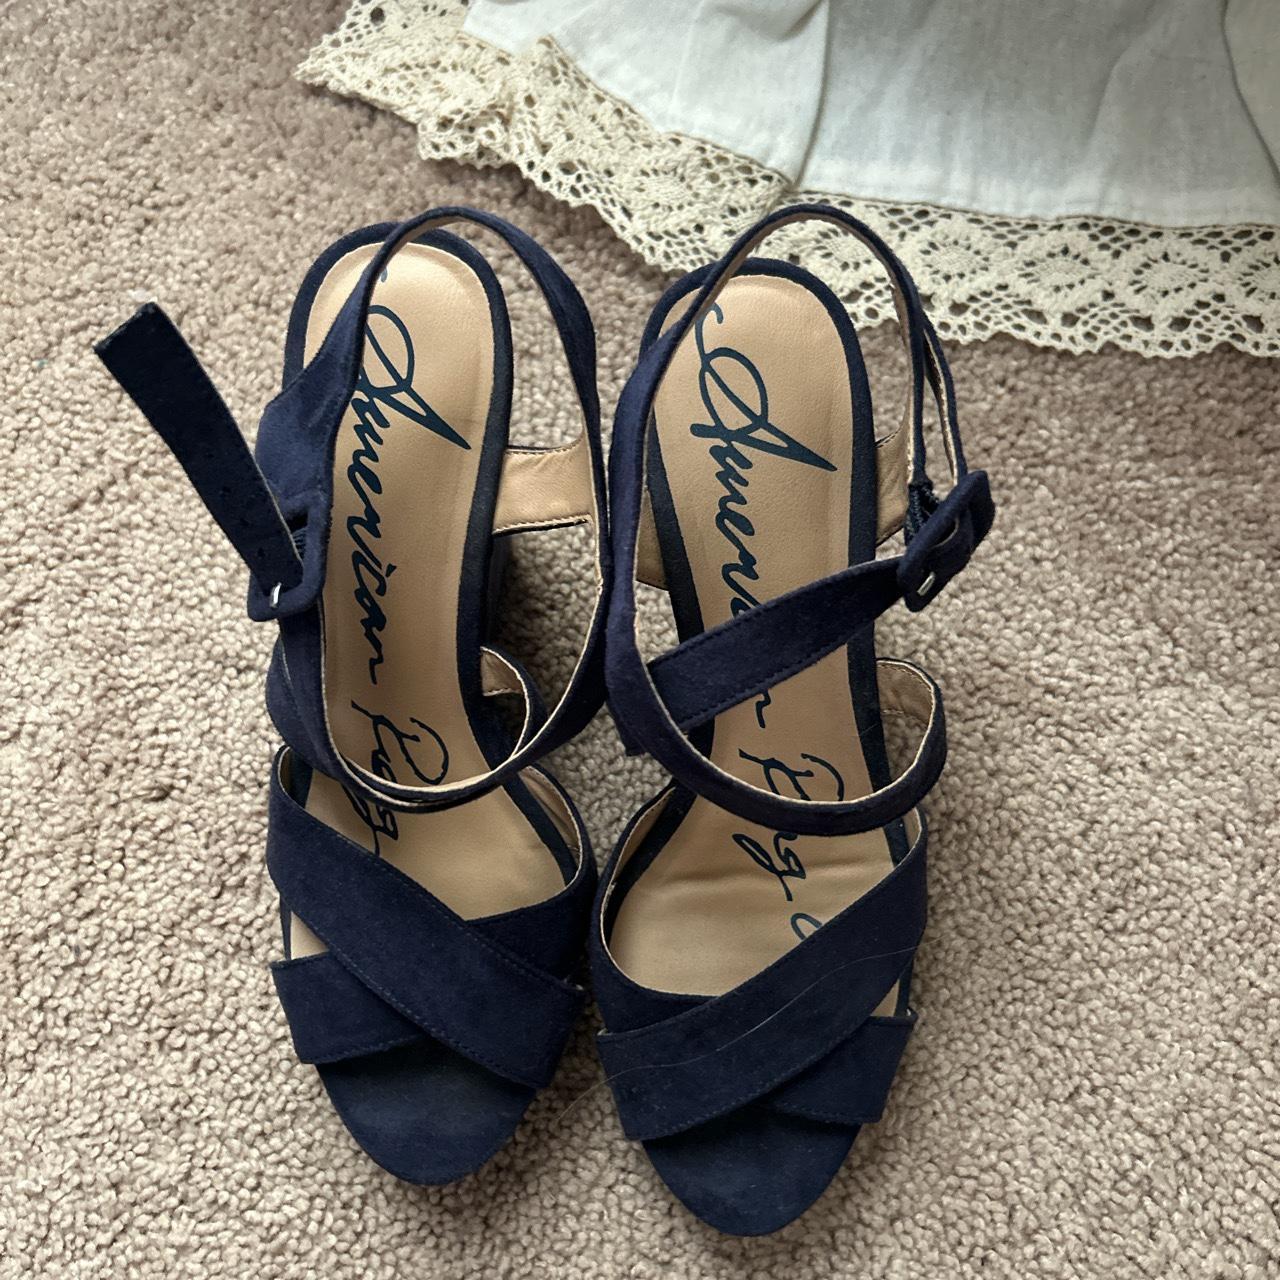 Cute navy sandal heels - Depop